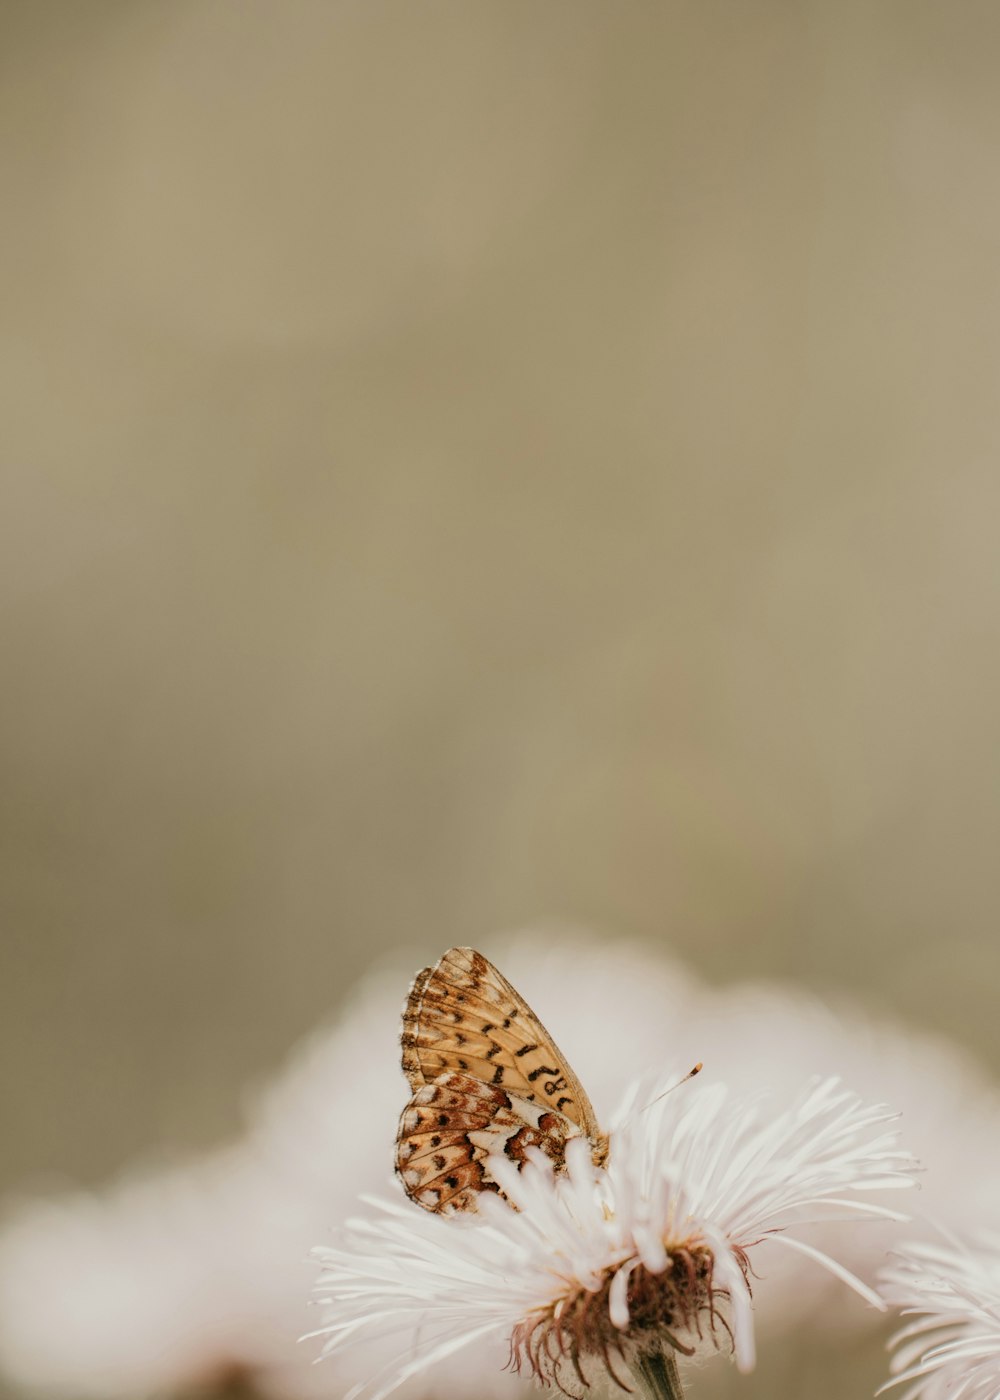 Una mariposa sentada encima de una flor blanca